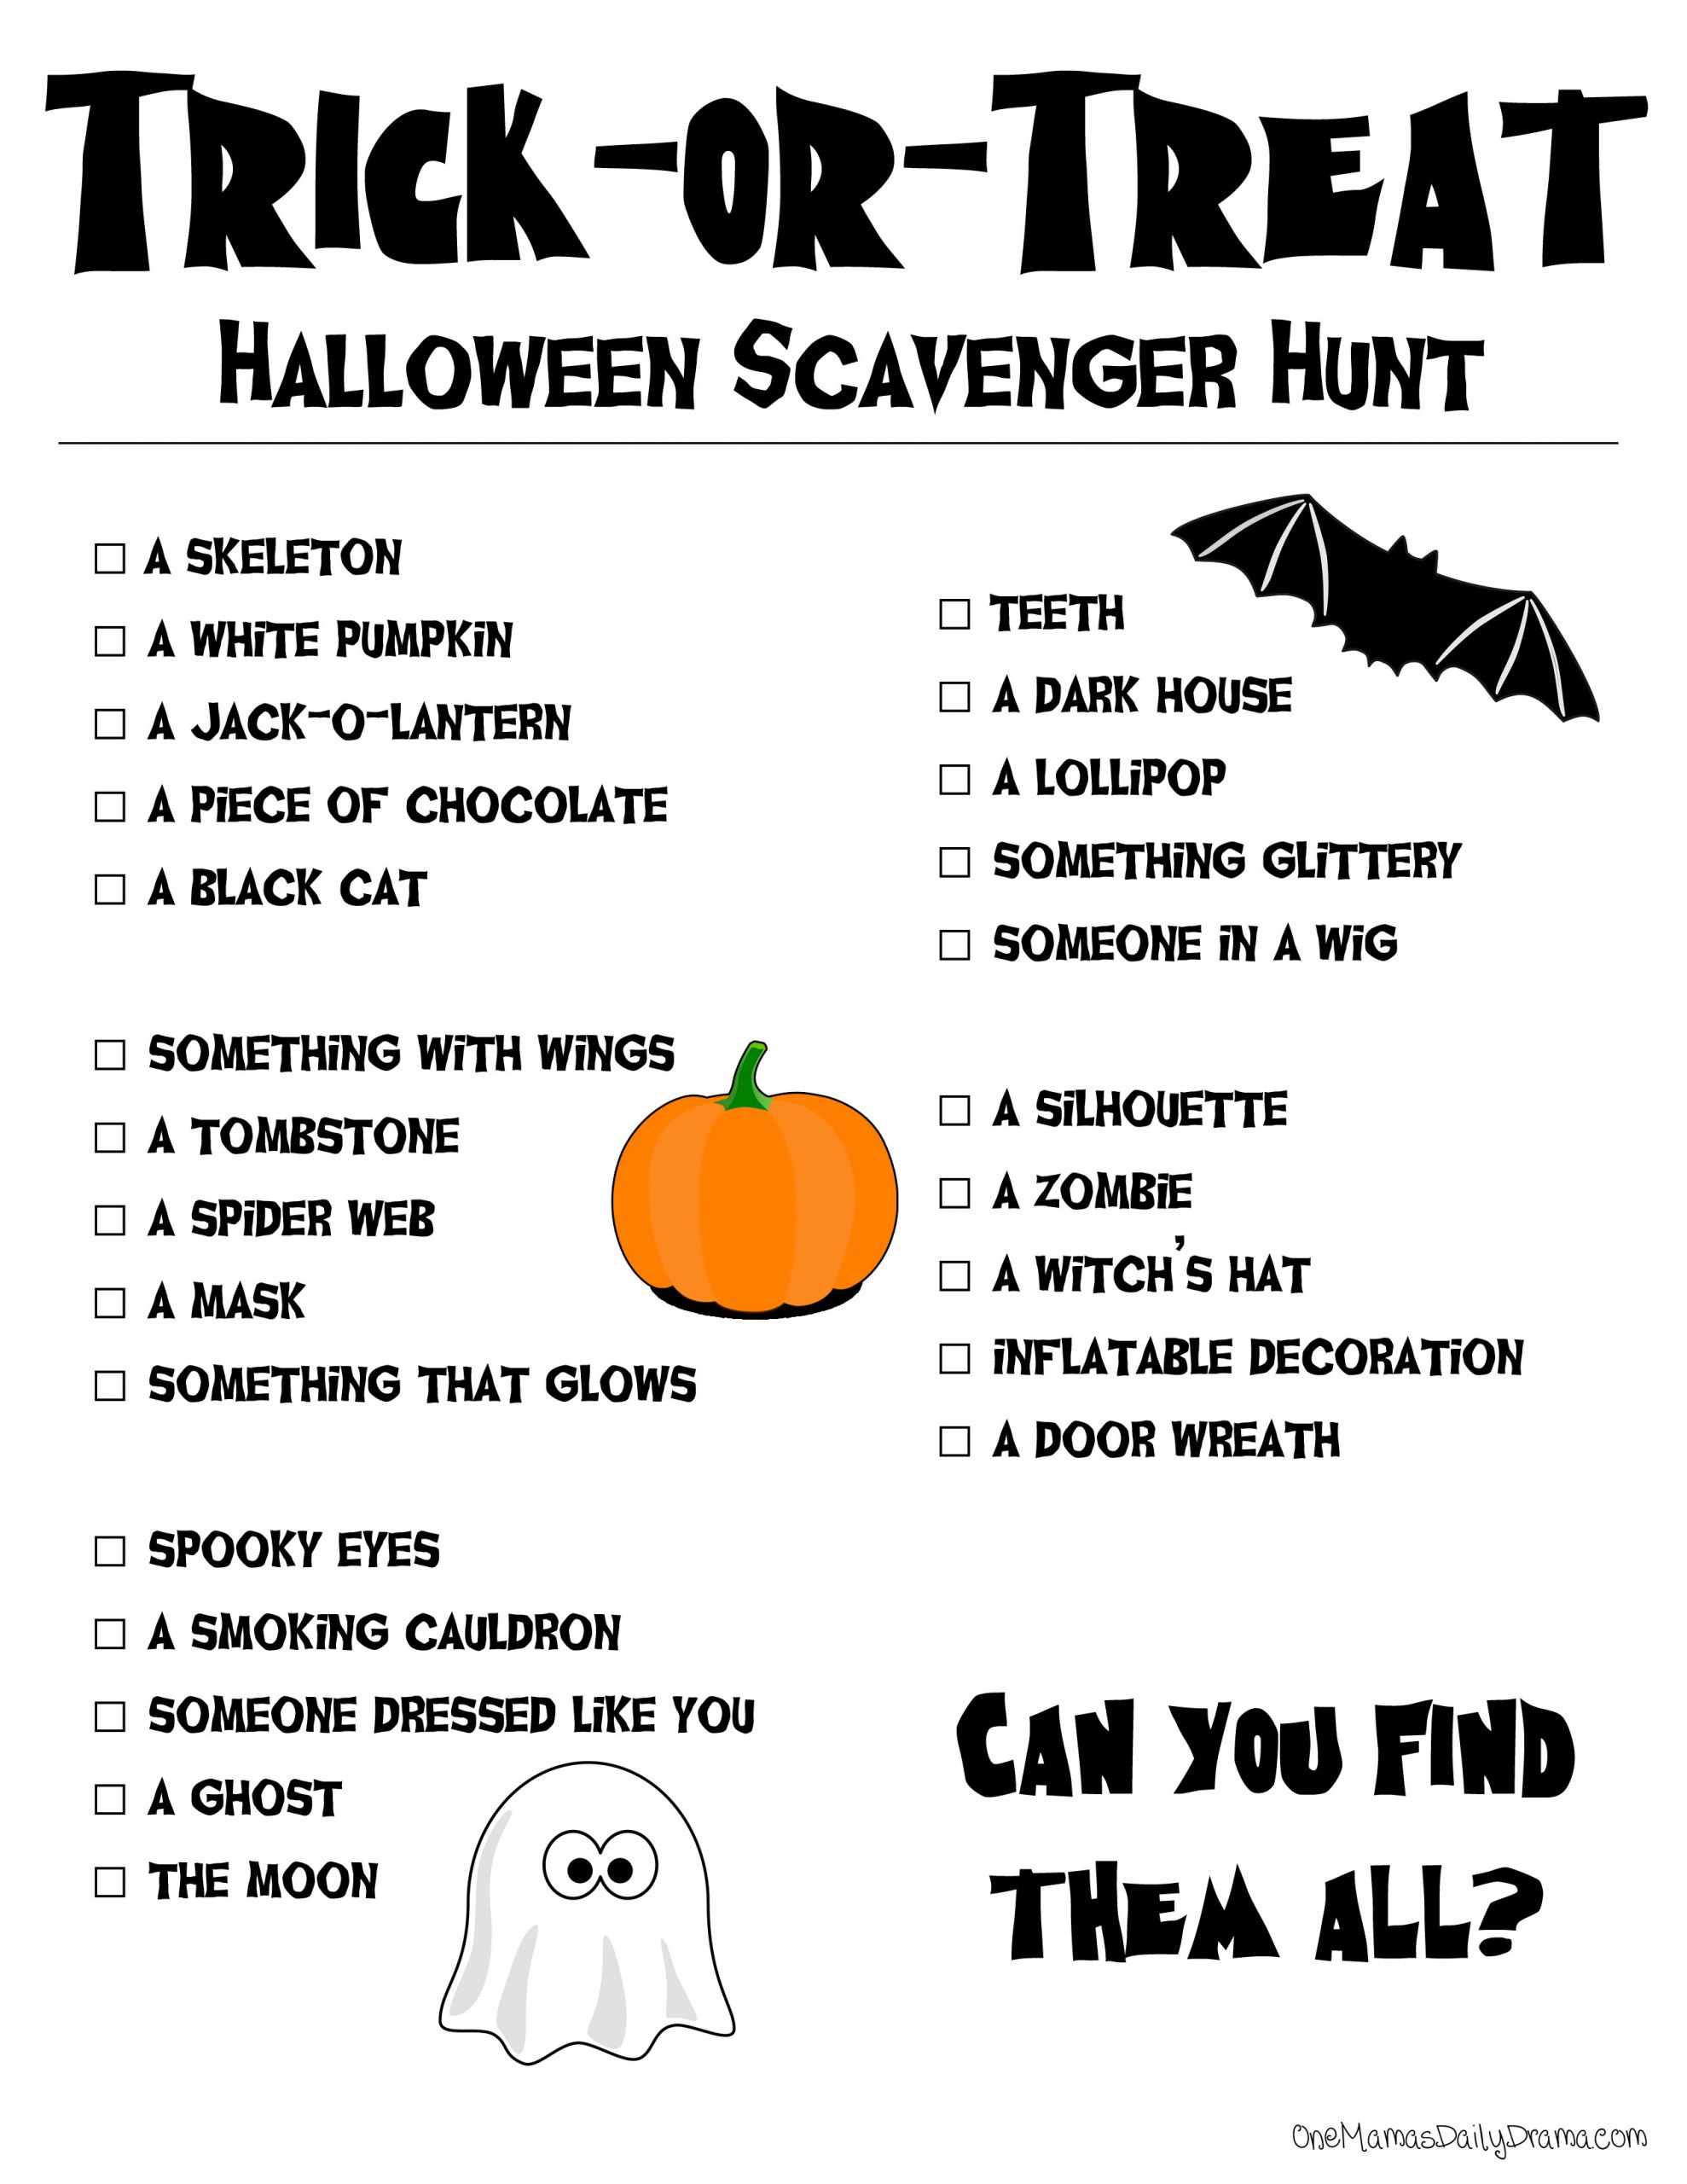 Halloween Scavenger Hunt Ideas
 halloween scavenger hunt